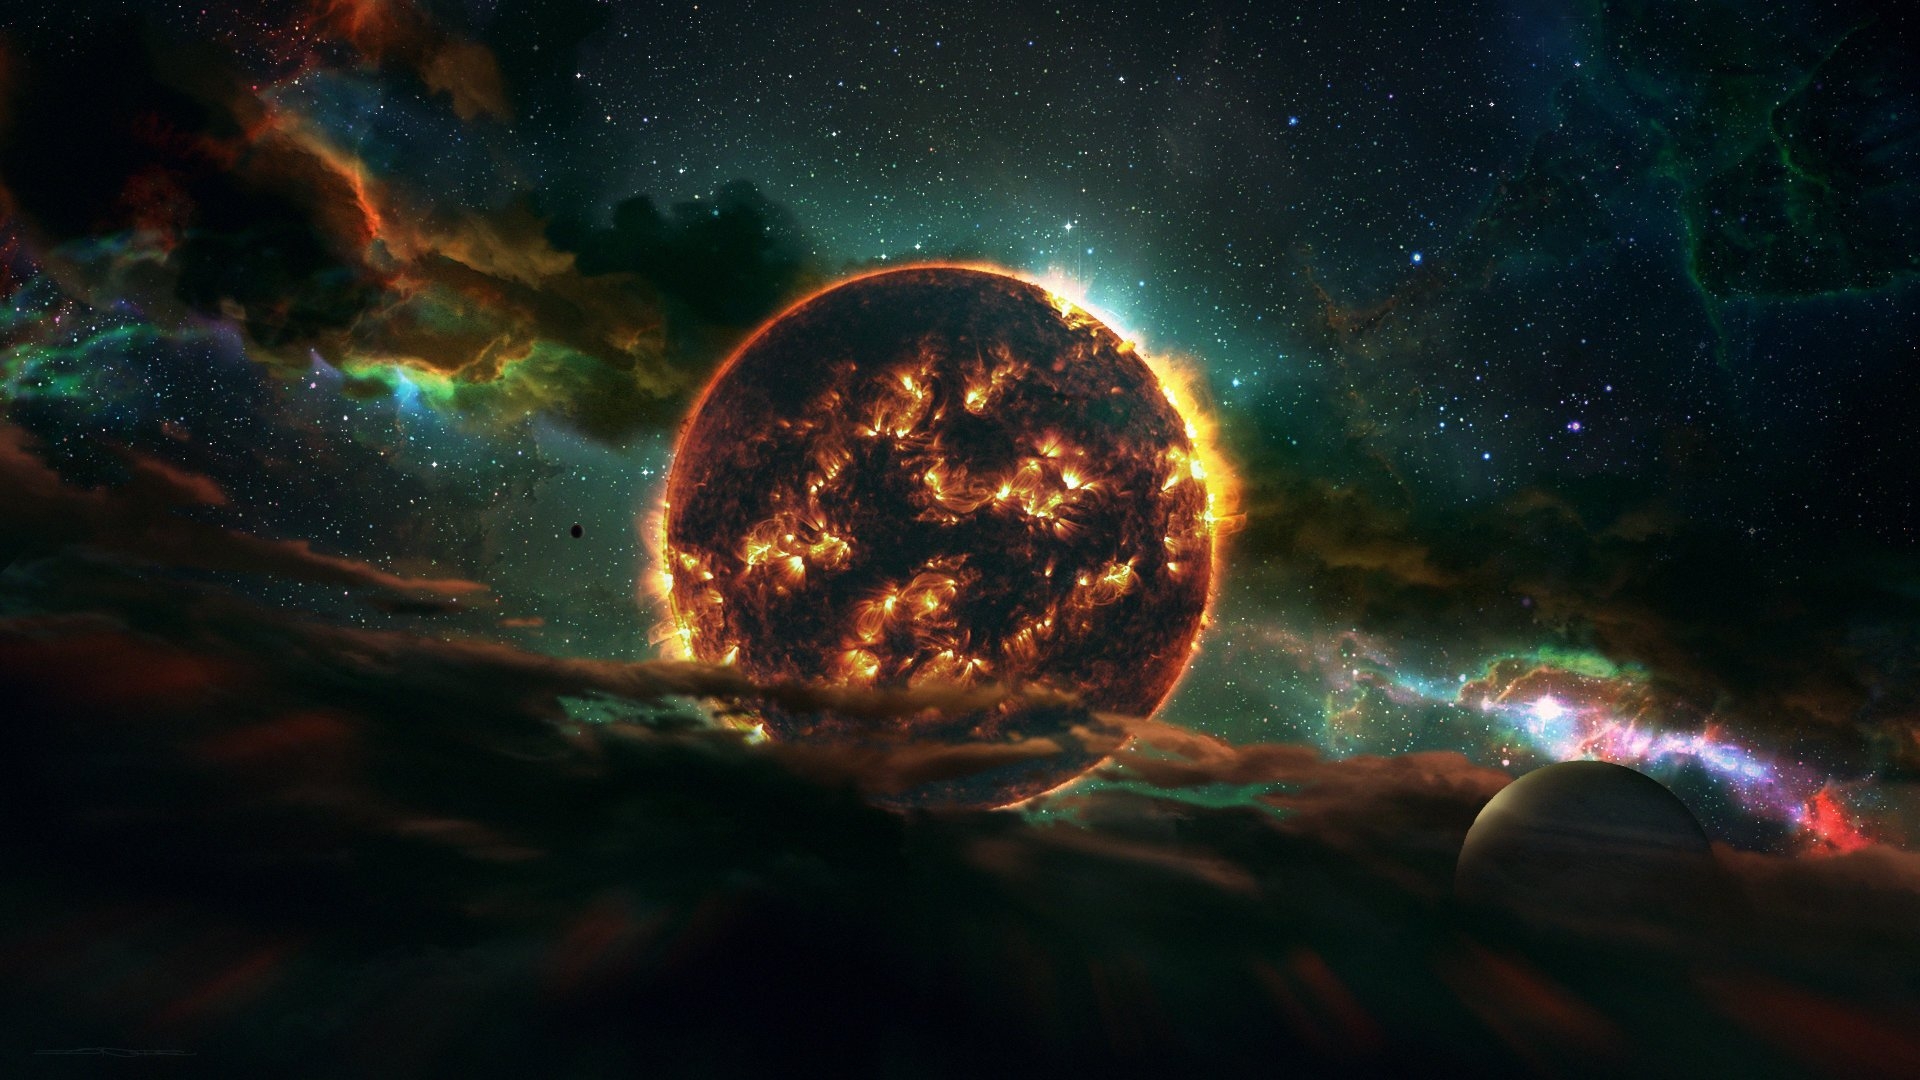 Огненная звезда с планетами и туманностью · бесплатная фотография